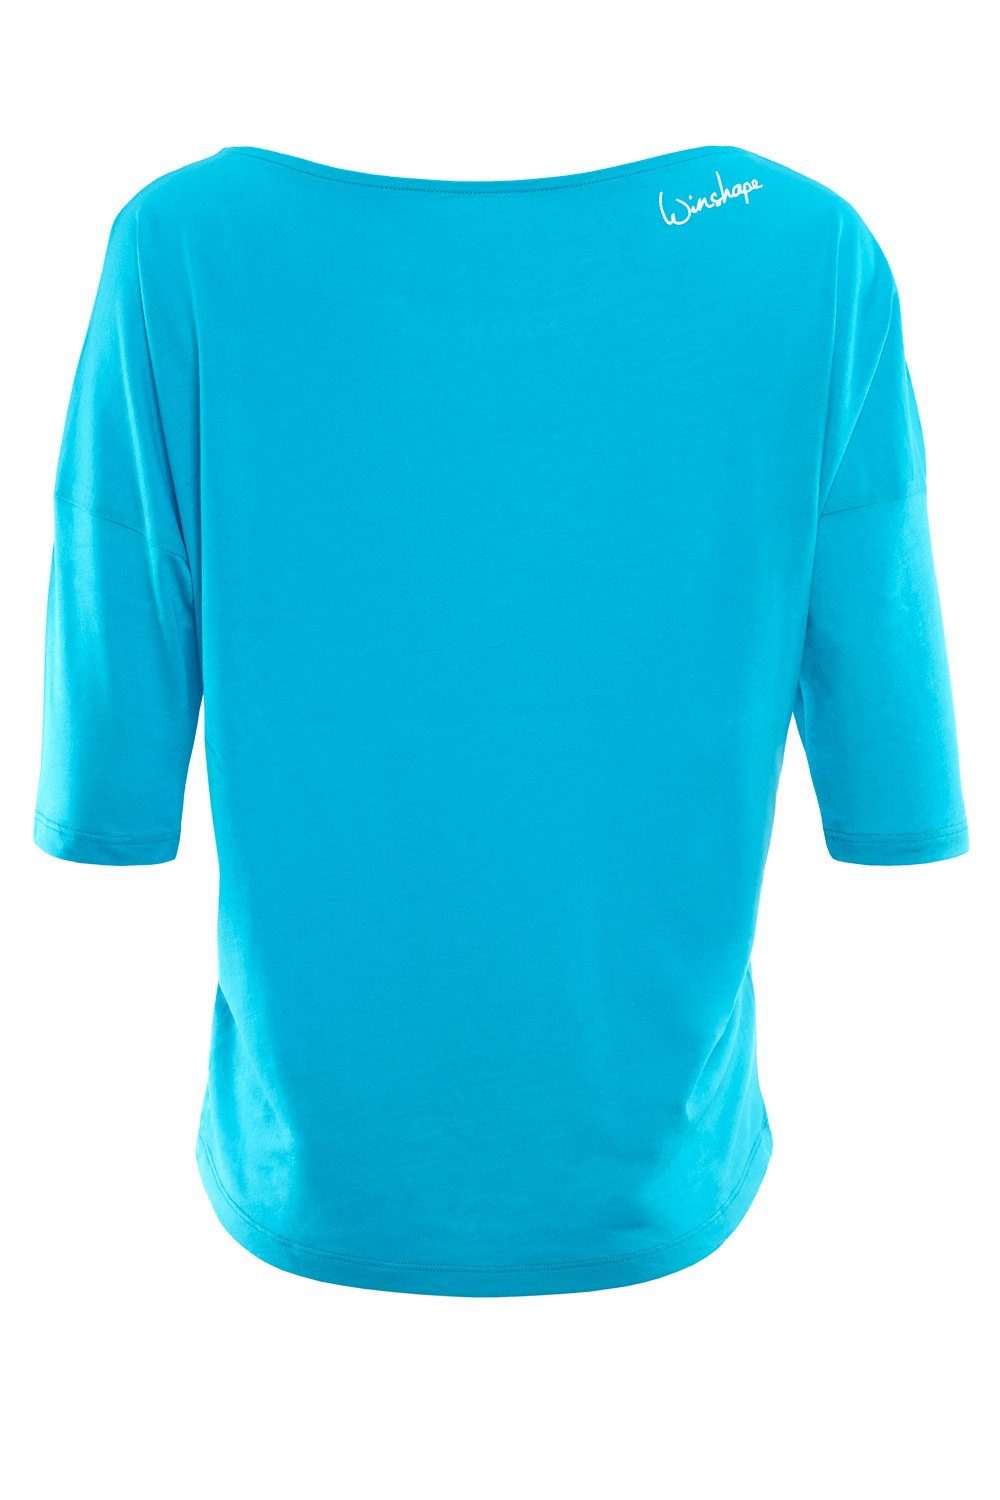 Winshape 3/4-Arm-Shirt MCS001 ultra mit weiß blue glitzer leicht sky - weißem Glitzer-Aufdruck